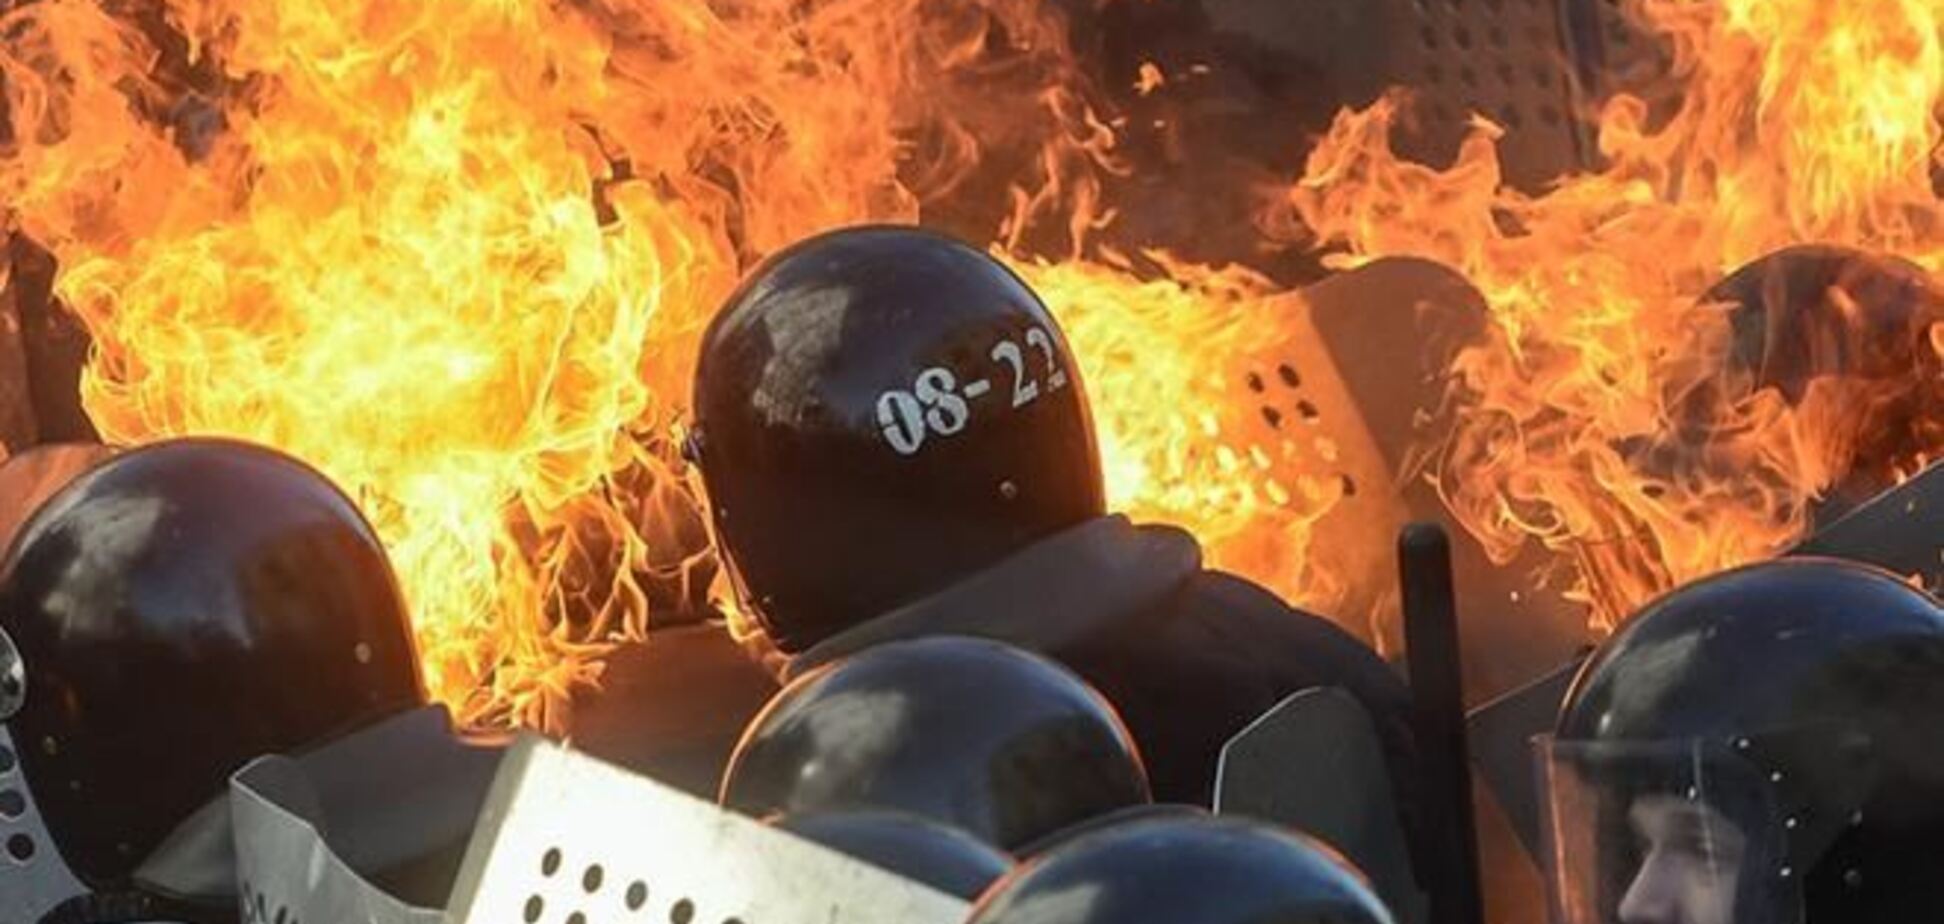 На Майдане 'огненная баррикада' останавливает силовиков, слышны взрывы